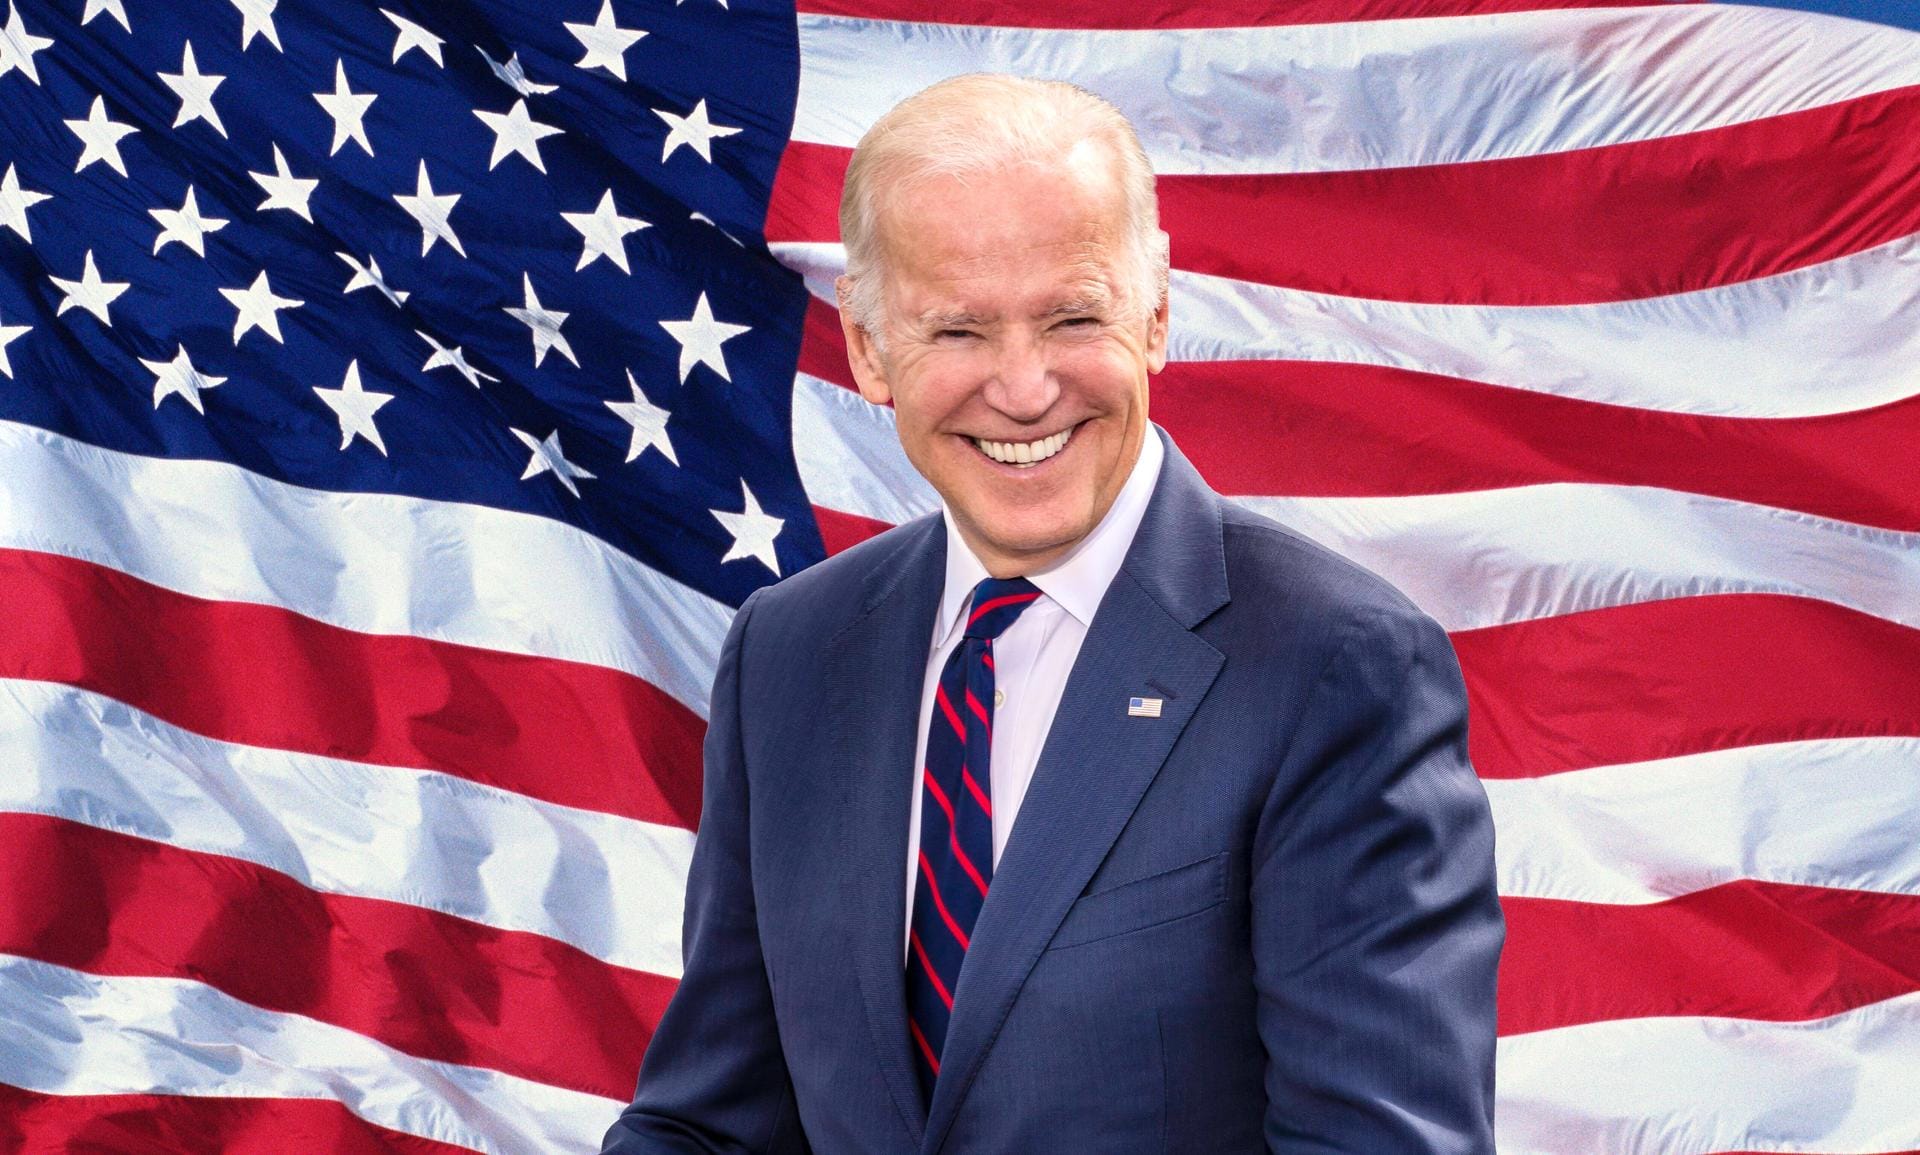 Am 20. Januar 2021 wird der Demokrat Joe Biden als neuer US-Präsident vereidigt. Damit zieht auch neues Personal in die Regierung ein.